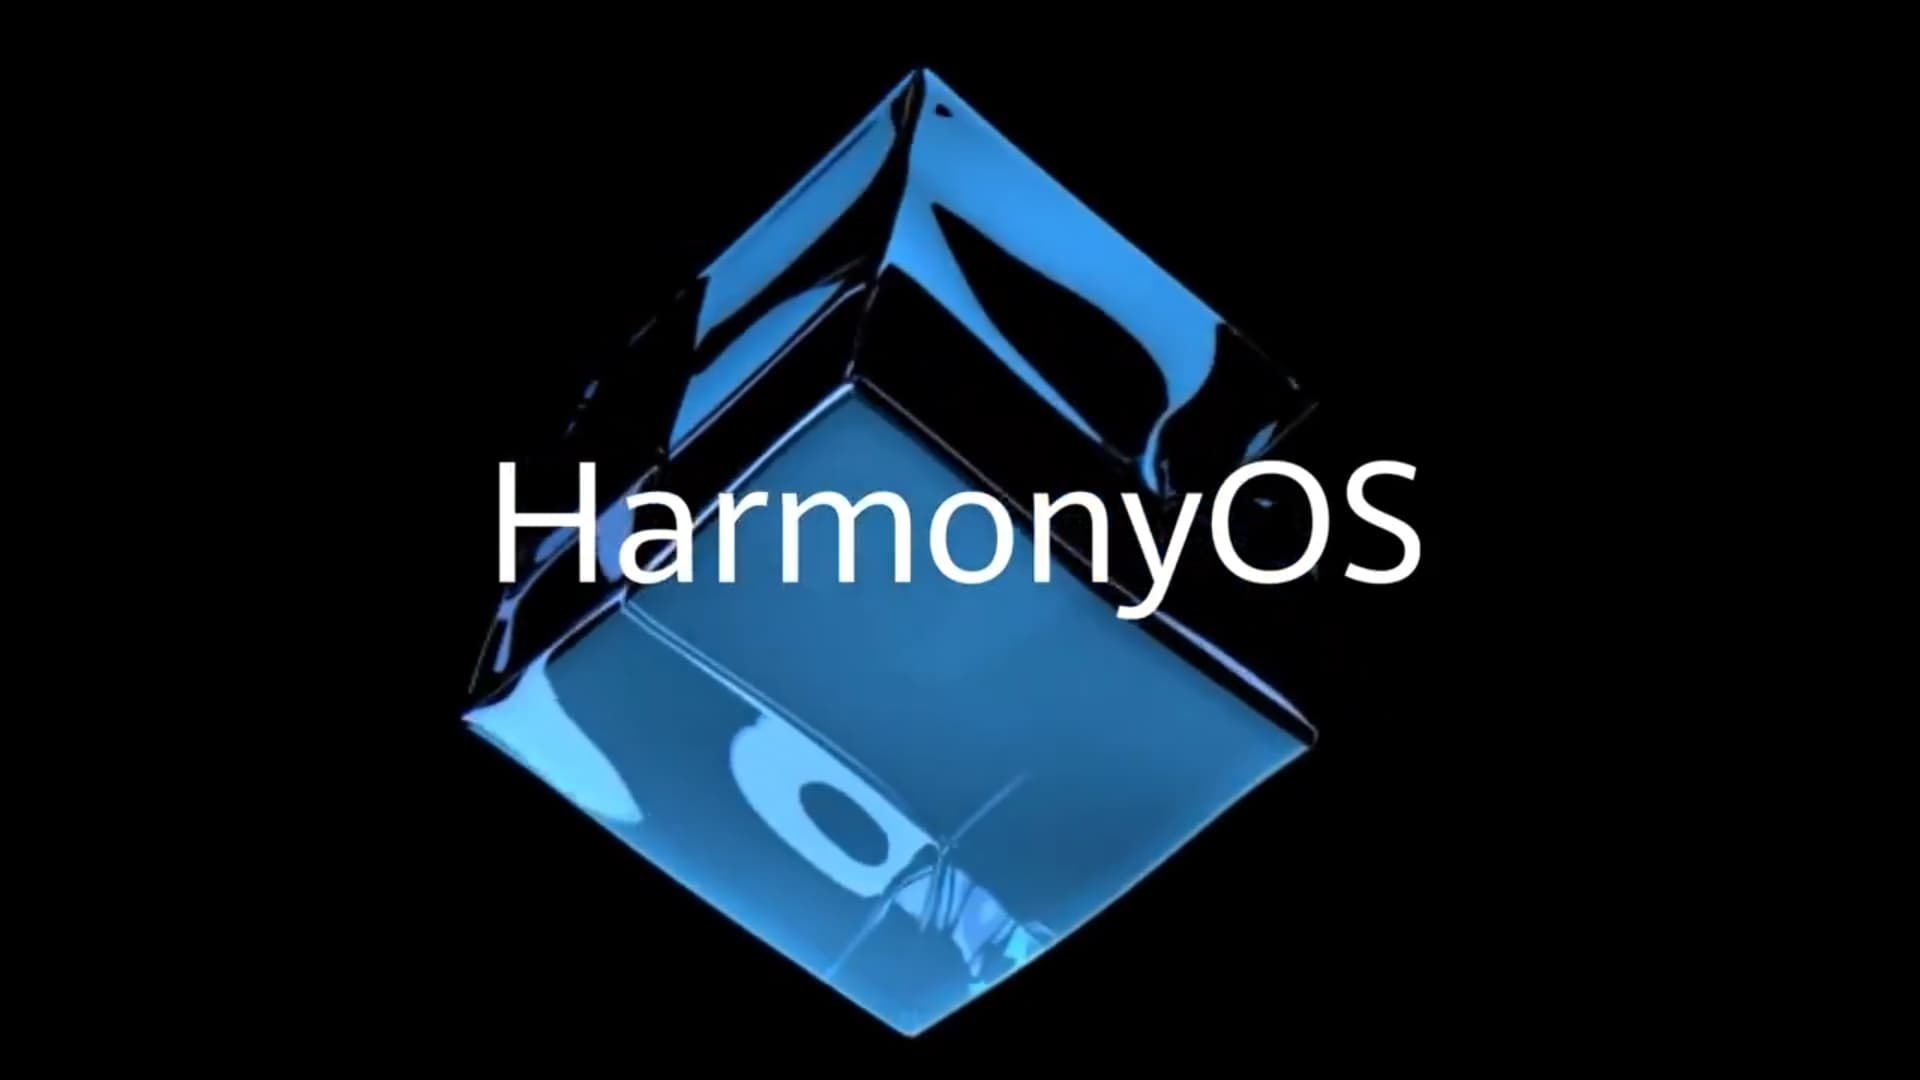 HarmonyOS vs. Android